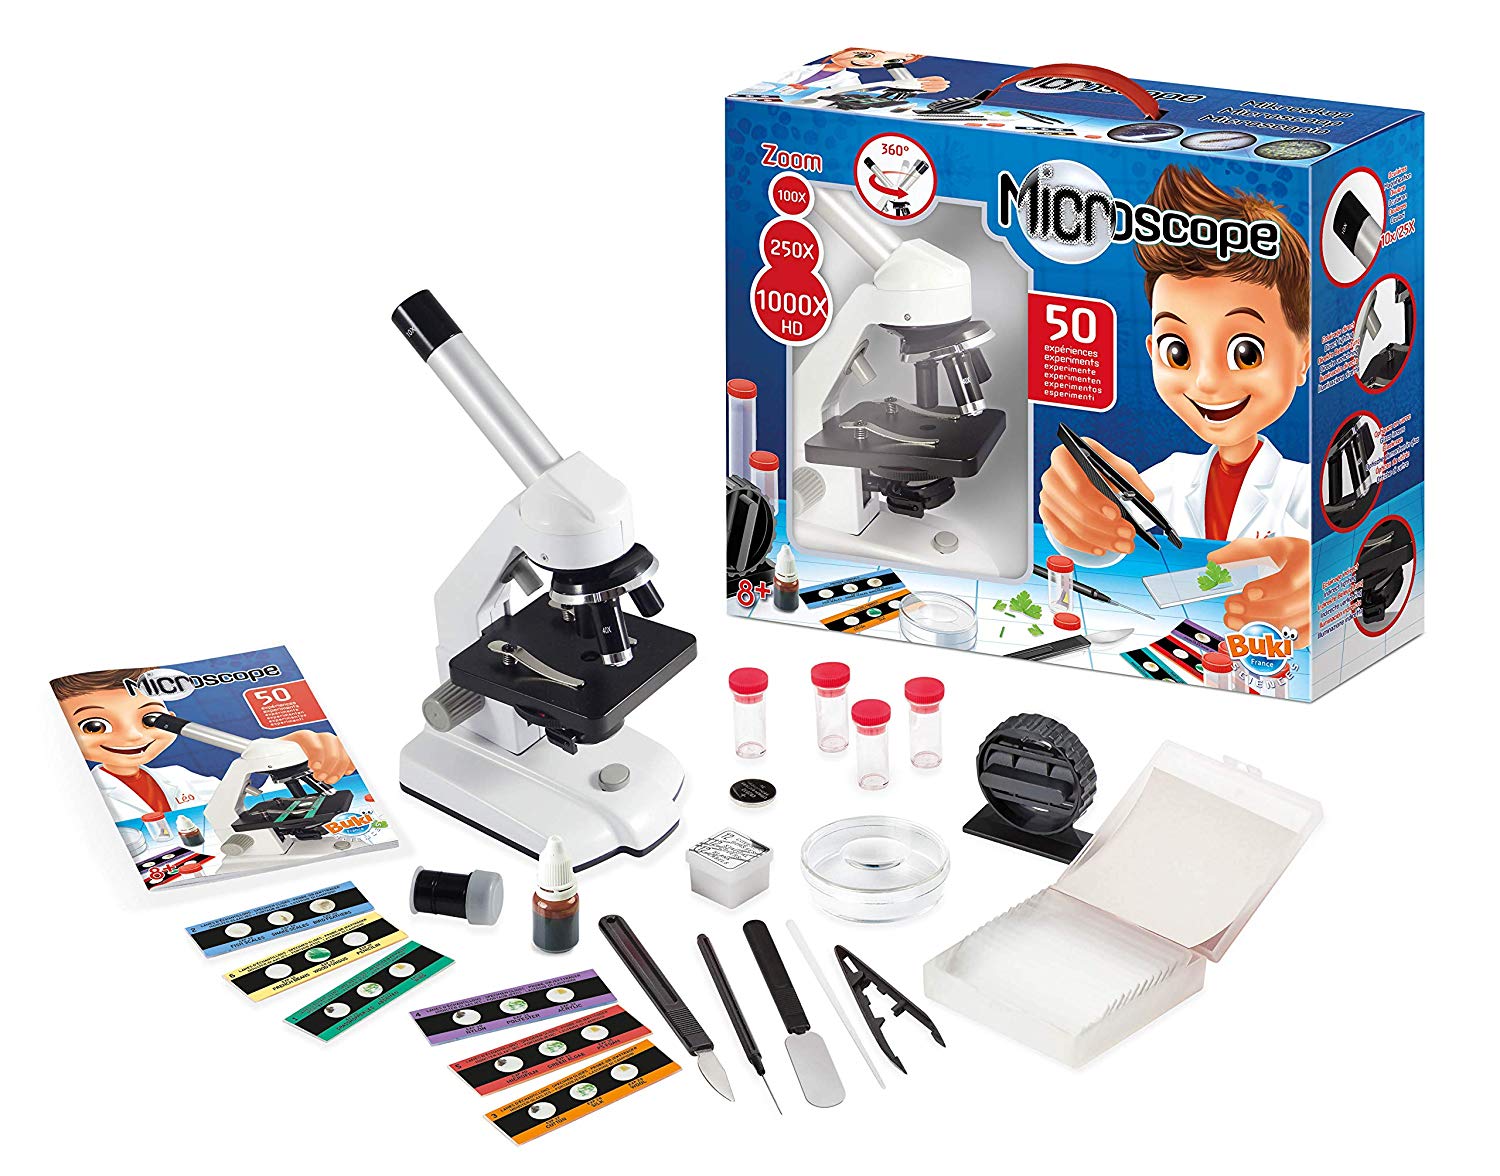 GANADA Microscope Enfant 1200X Kit de Microscope avec Lampe Jeu Scientifique Jouet éducatif Cadeau pour Débutant Enfant 